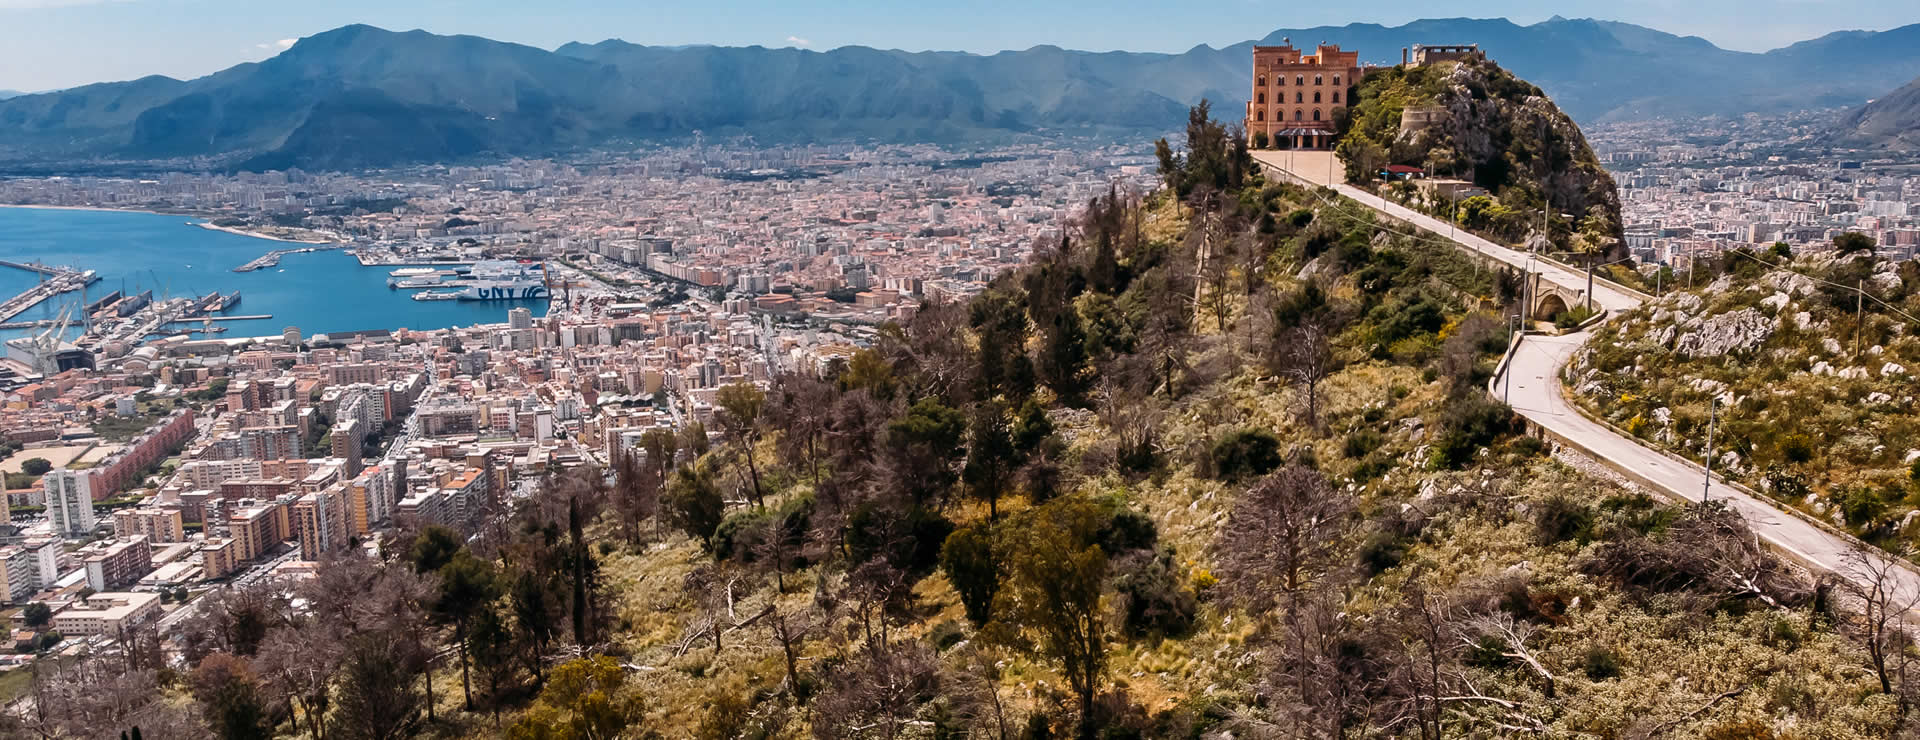 Palermo panoramic view